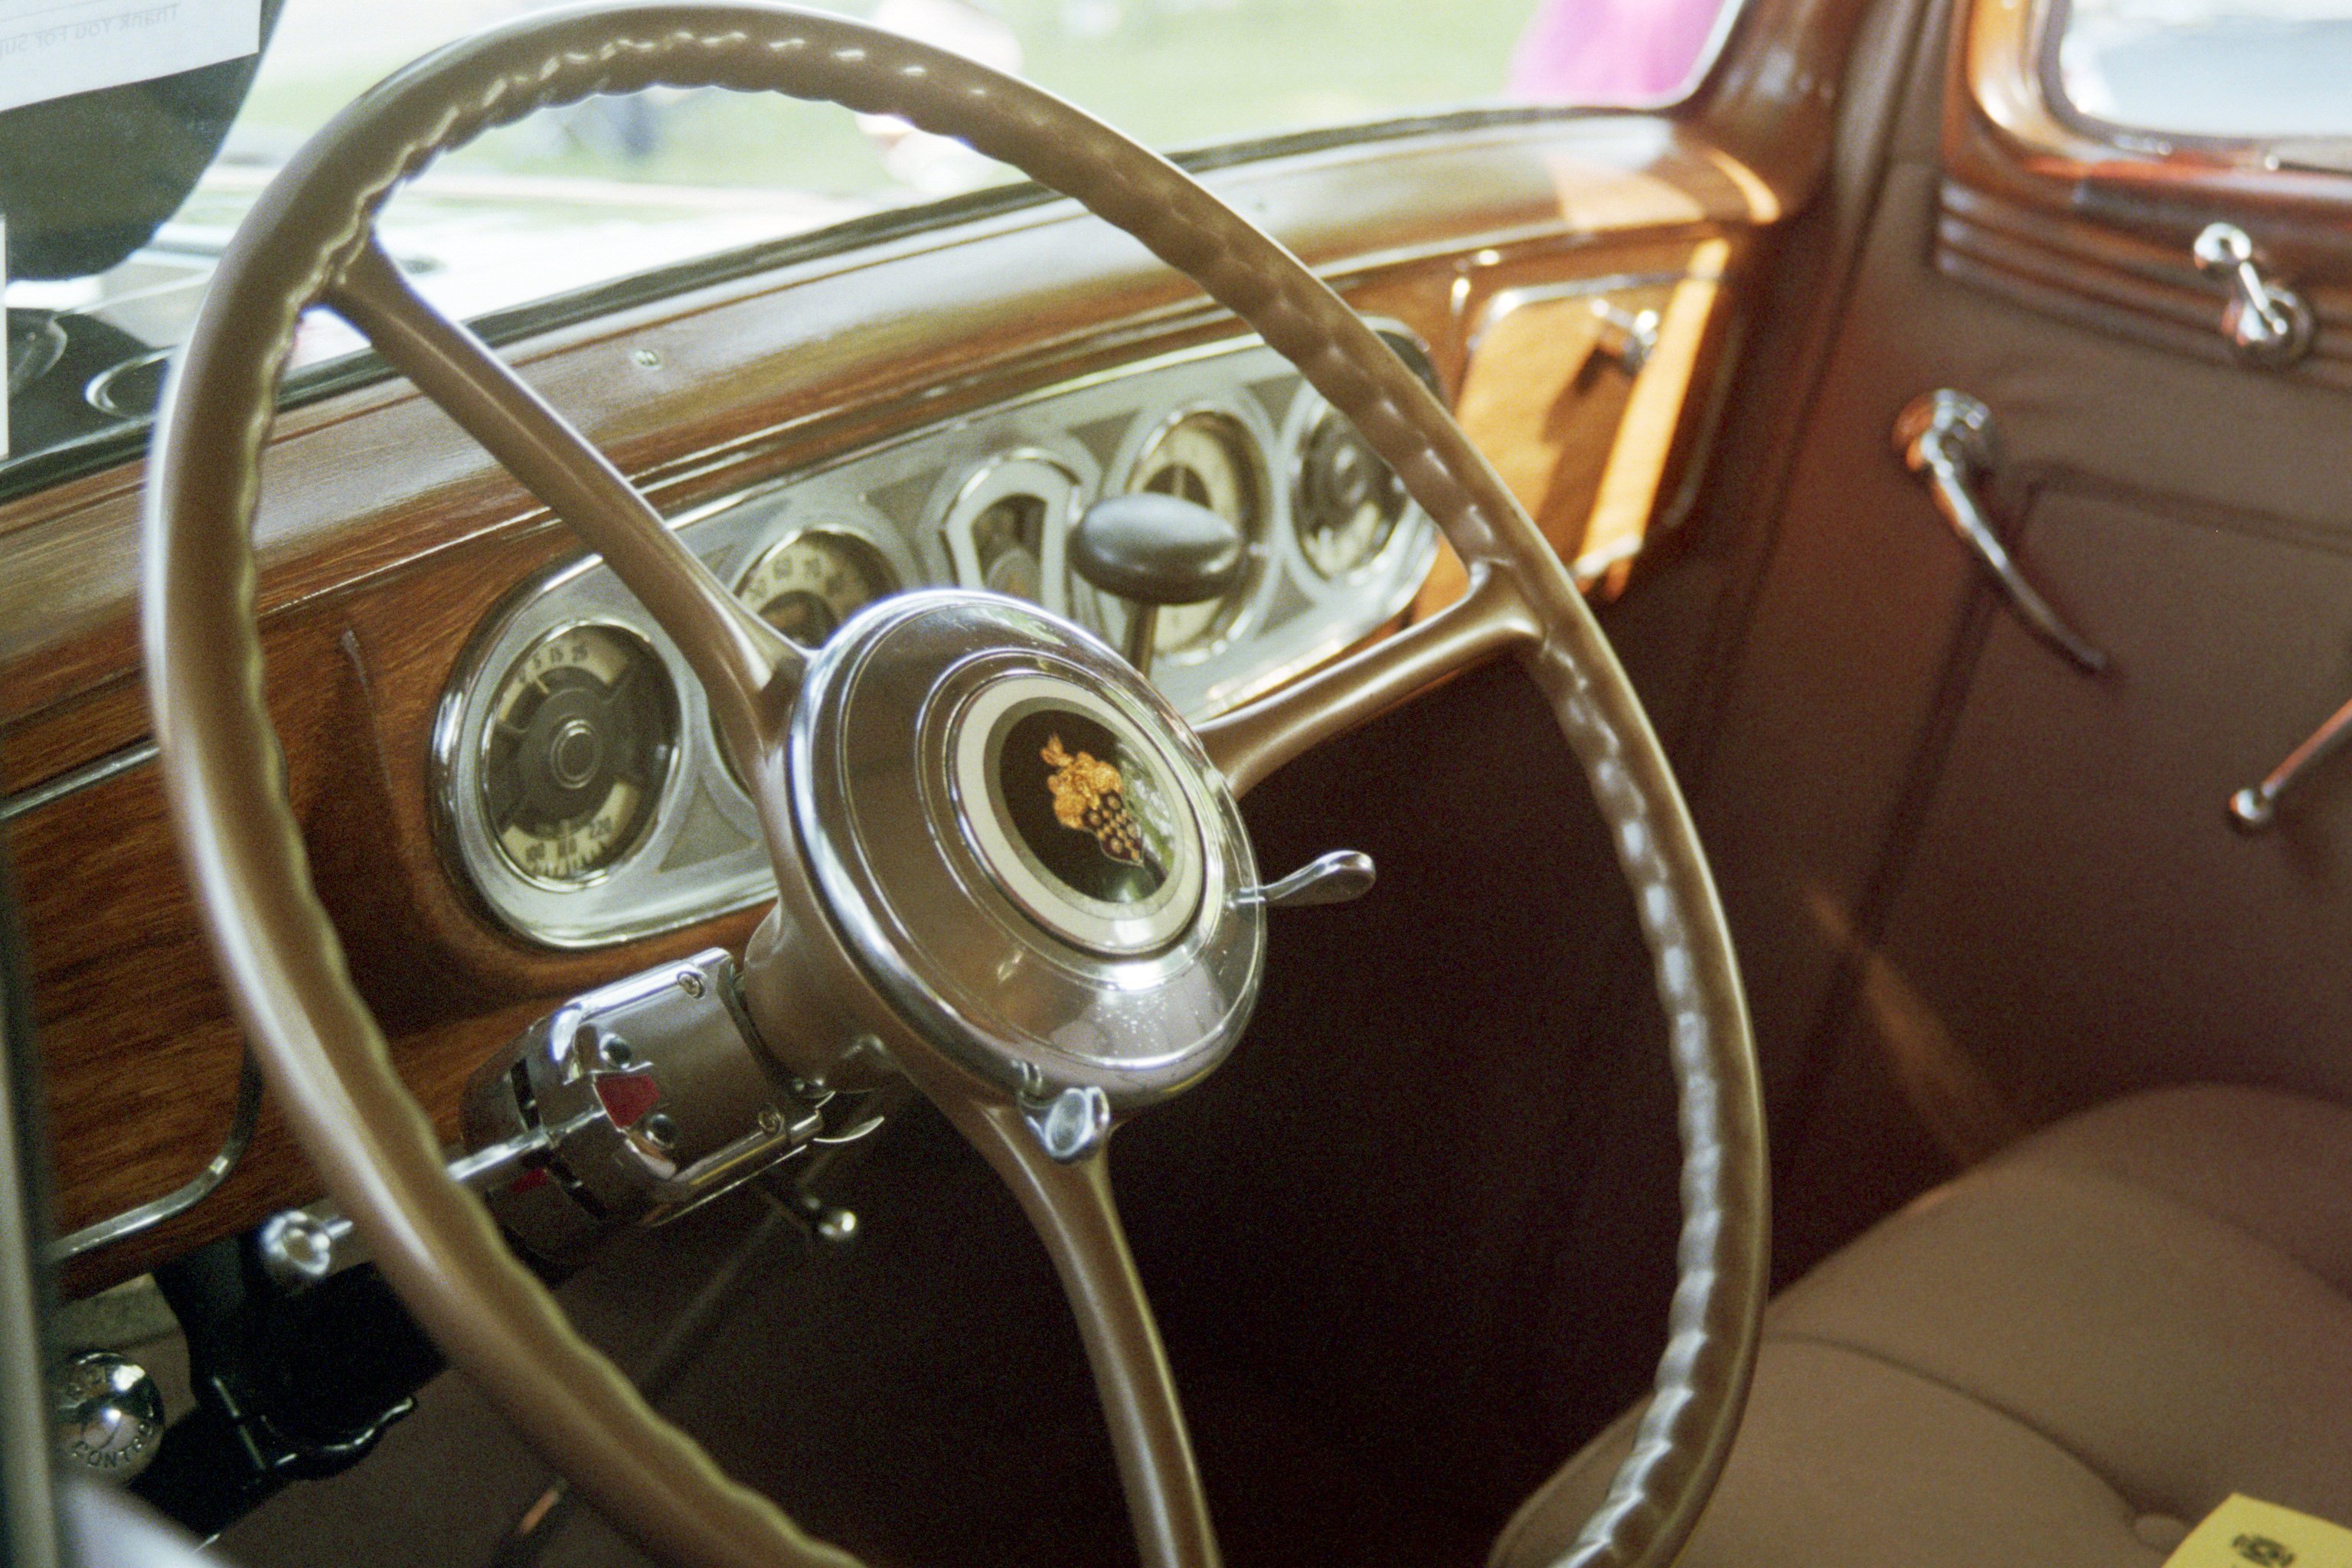 General 3072x2048 car vintage steering wheel car interior vehicle